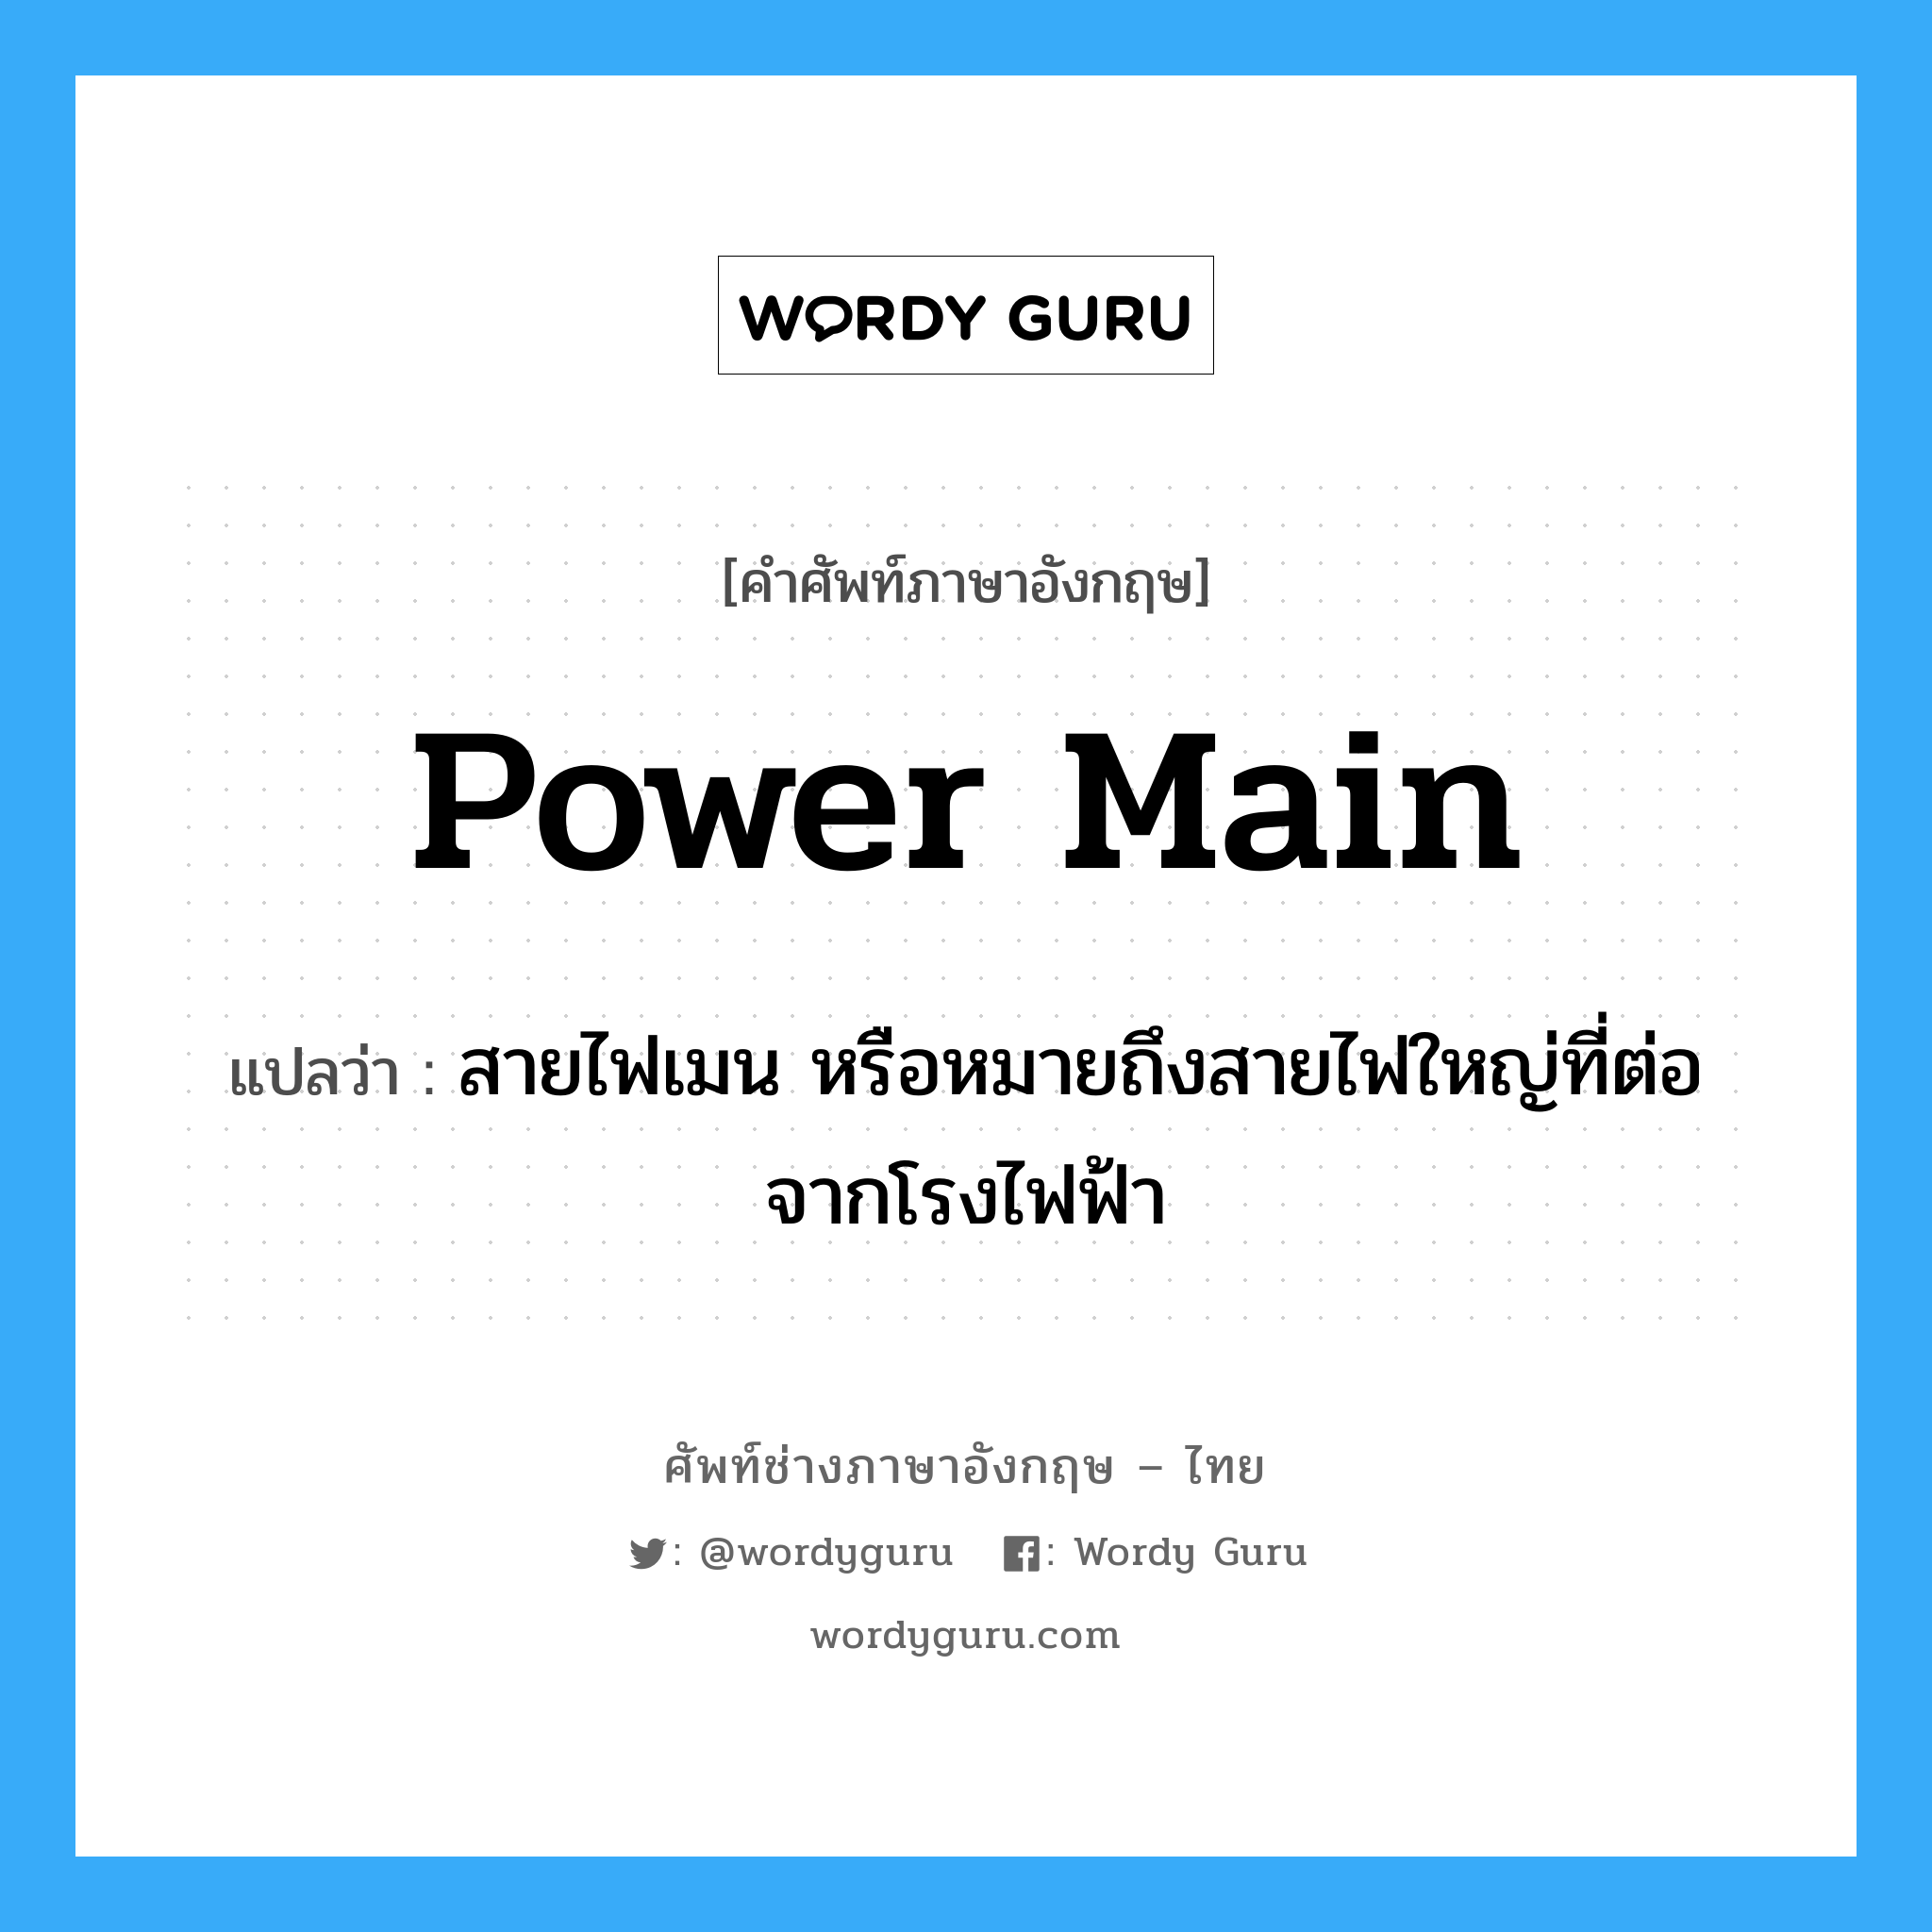 power-main แปลว่า?, คำศัพท์ช่างภาษาอังกฤษ - ไทย power main คำศัพท์ภาษาอังกฤษ power main แปลว่า สายไฟเมน หรือหมายถึงสายไฟใหญ่ที่ต่อจากโรงไฟฟ้า